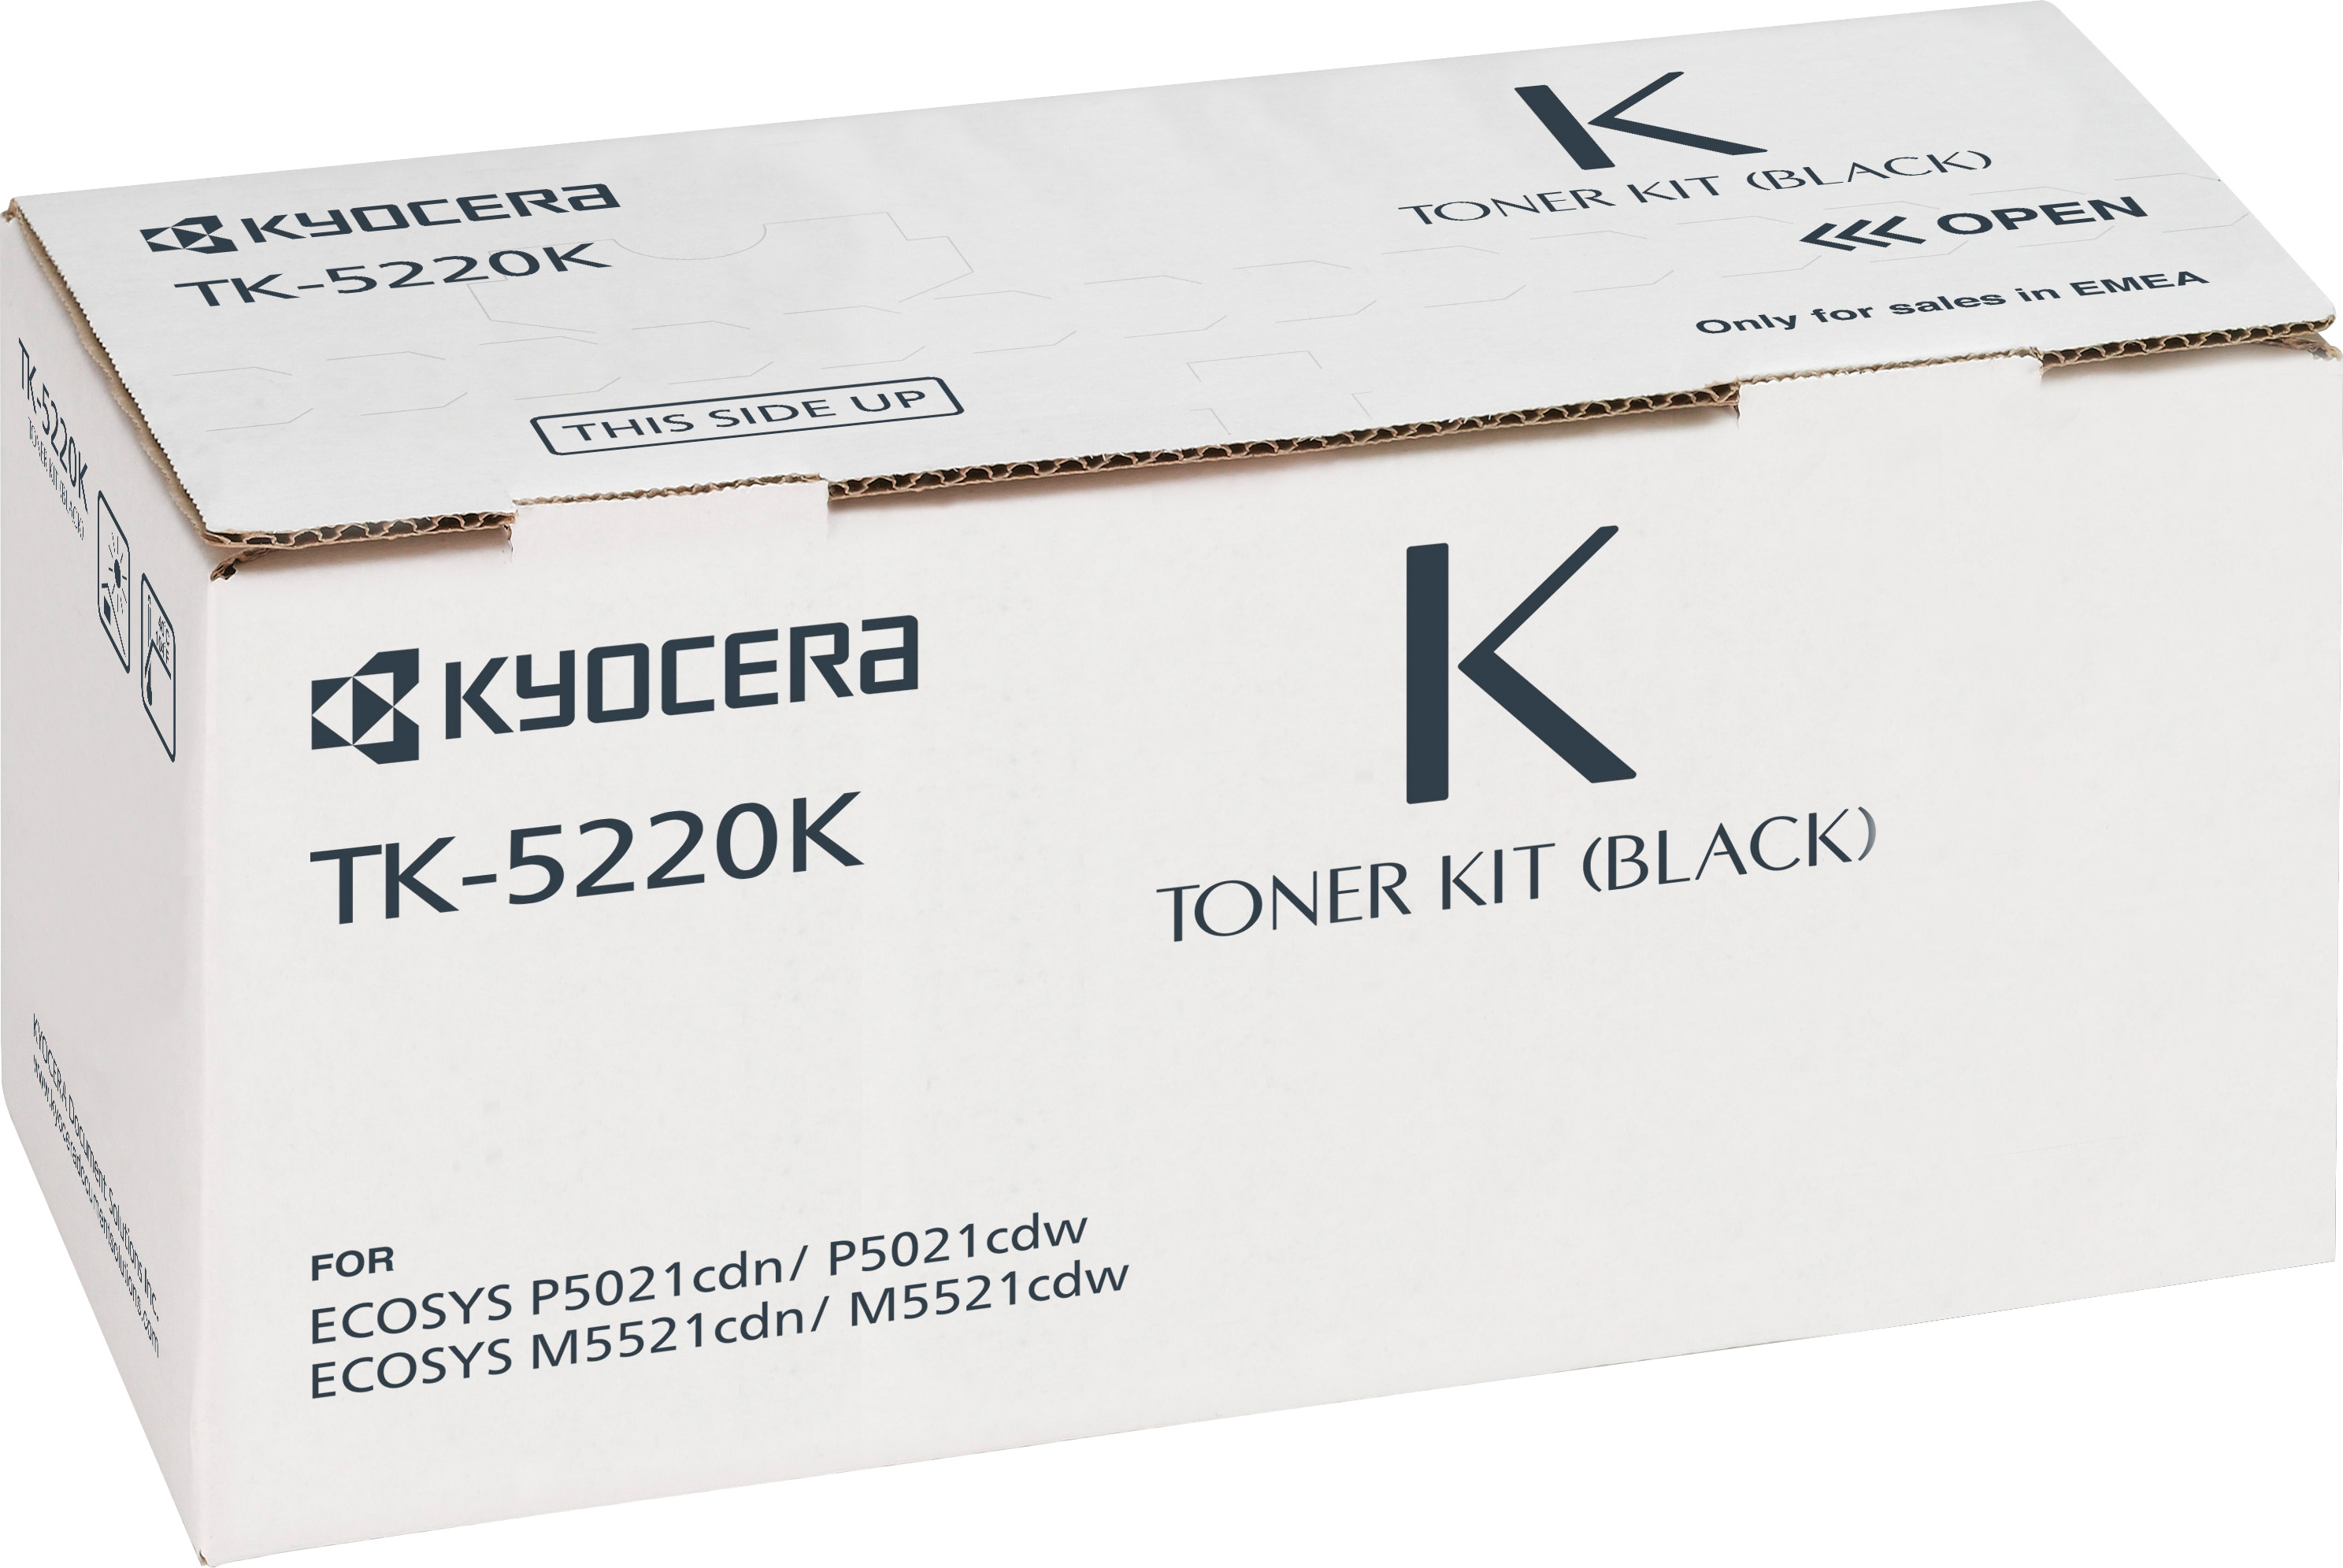 Kyocera Lasertoner TK-5220K schwarz 1.200 Seiten